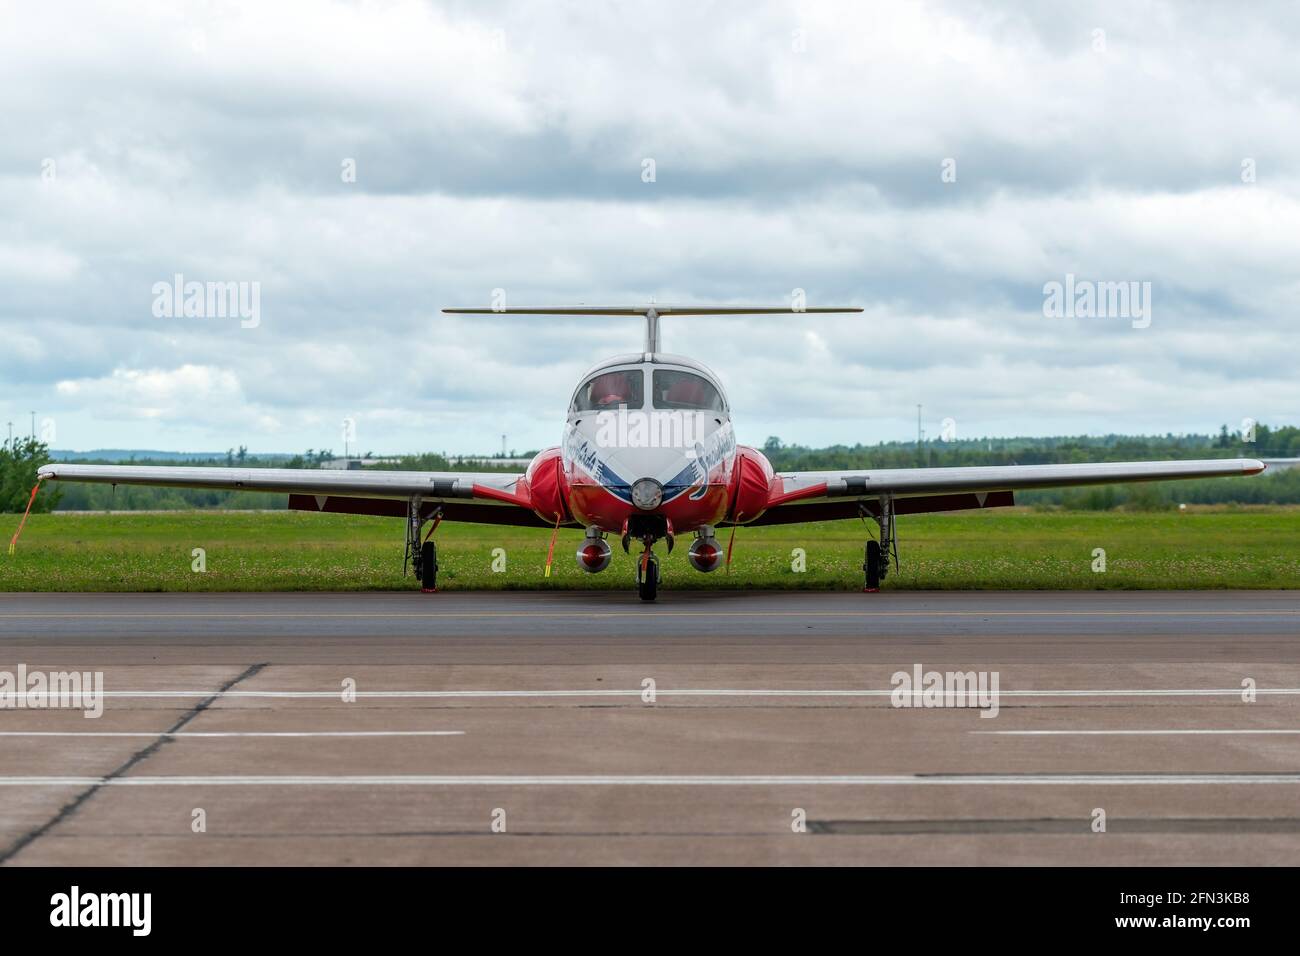 Moncton, N.-B., Canada - le 23 août 2014 : gros plan regardant directement l'avant d'un avion Canadian Snowbirds sur le côté d'une piste. Ciel couvert. Banque D'Images